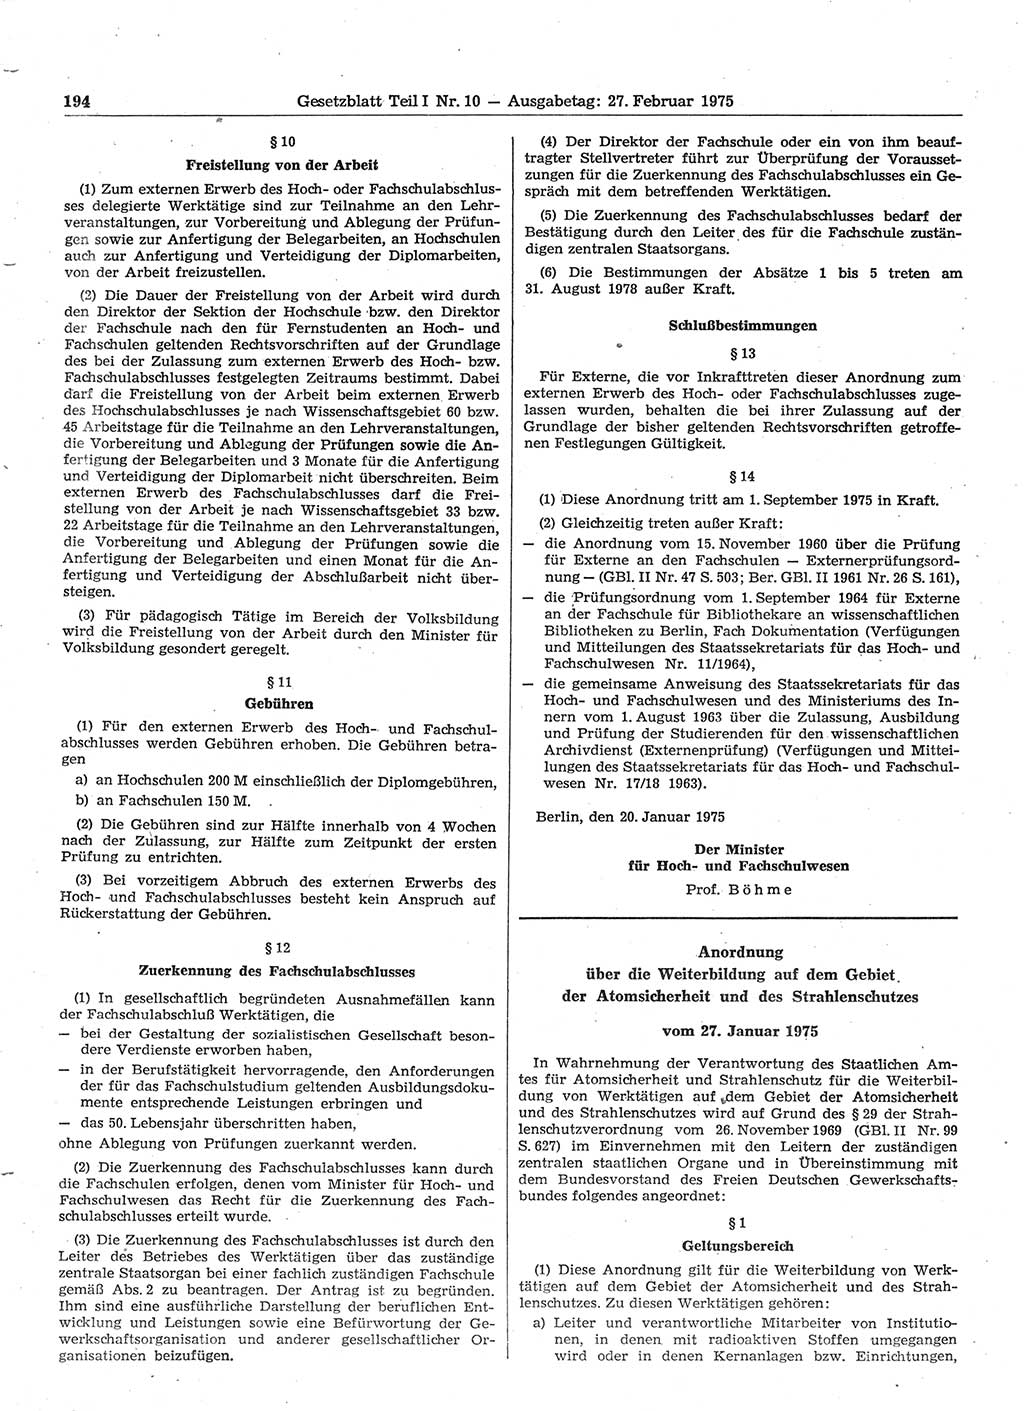 Gesetzblatt (GBl.) der Deutschen Demokratischen Republik (DDR) Teil Ⅰ 1975, Seite 194 (GBl. DDR Ⅰ 1975, S. 194)